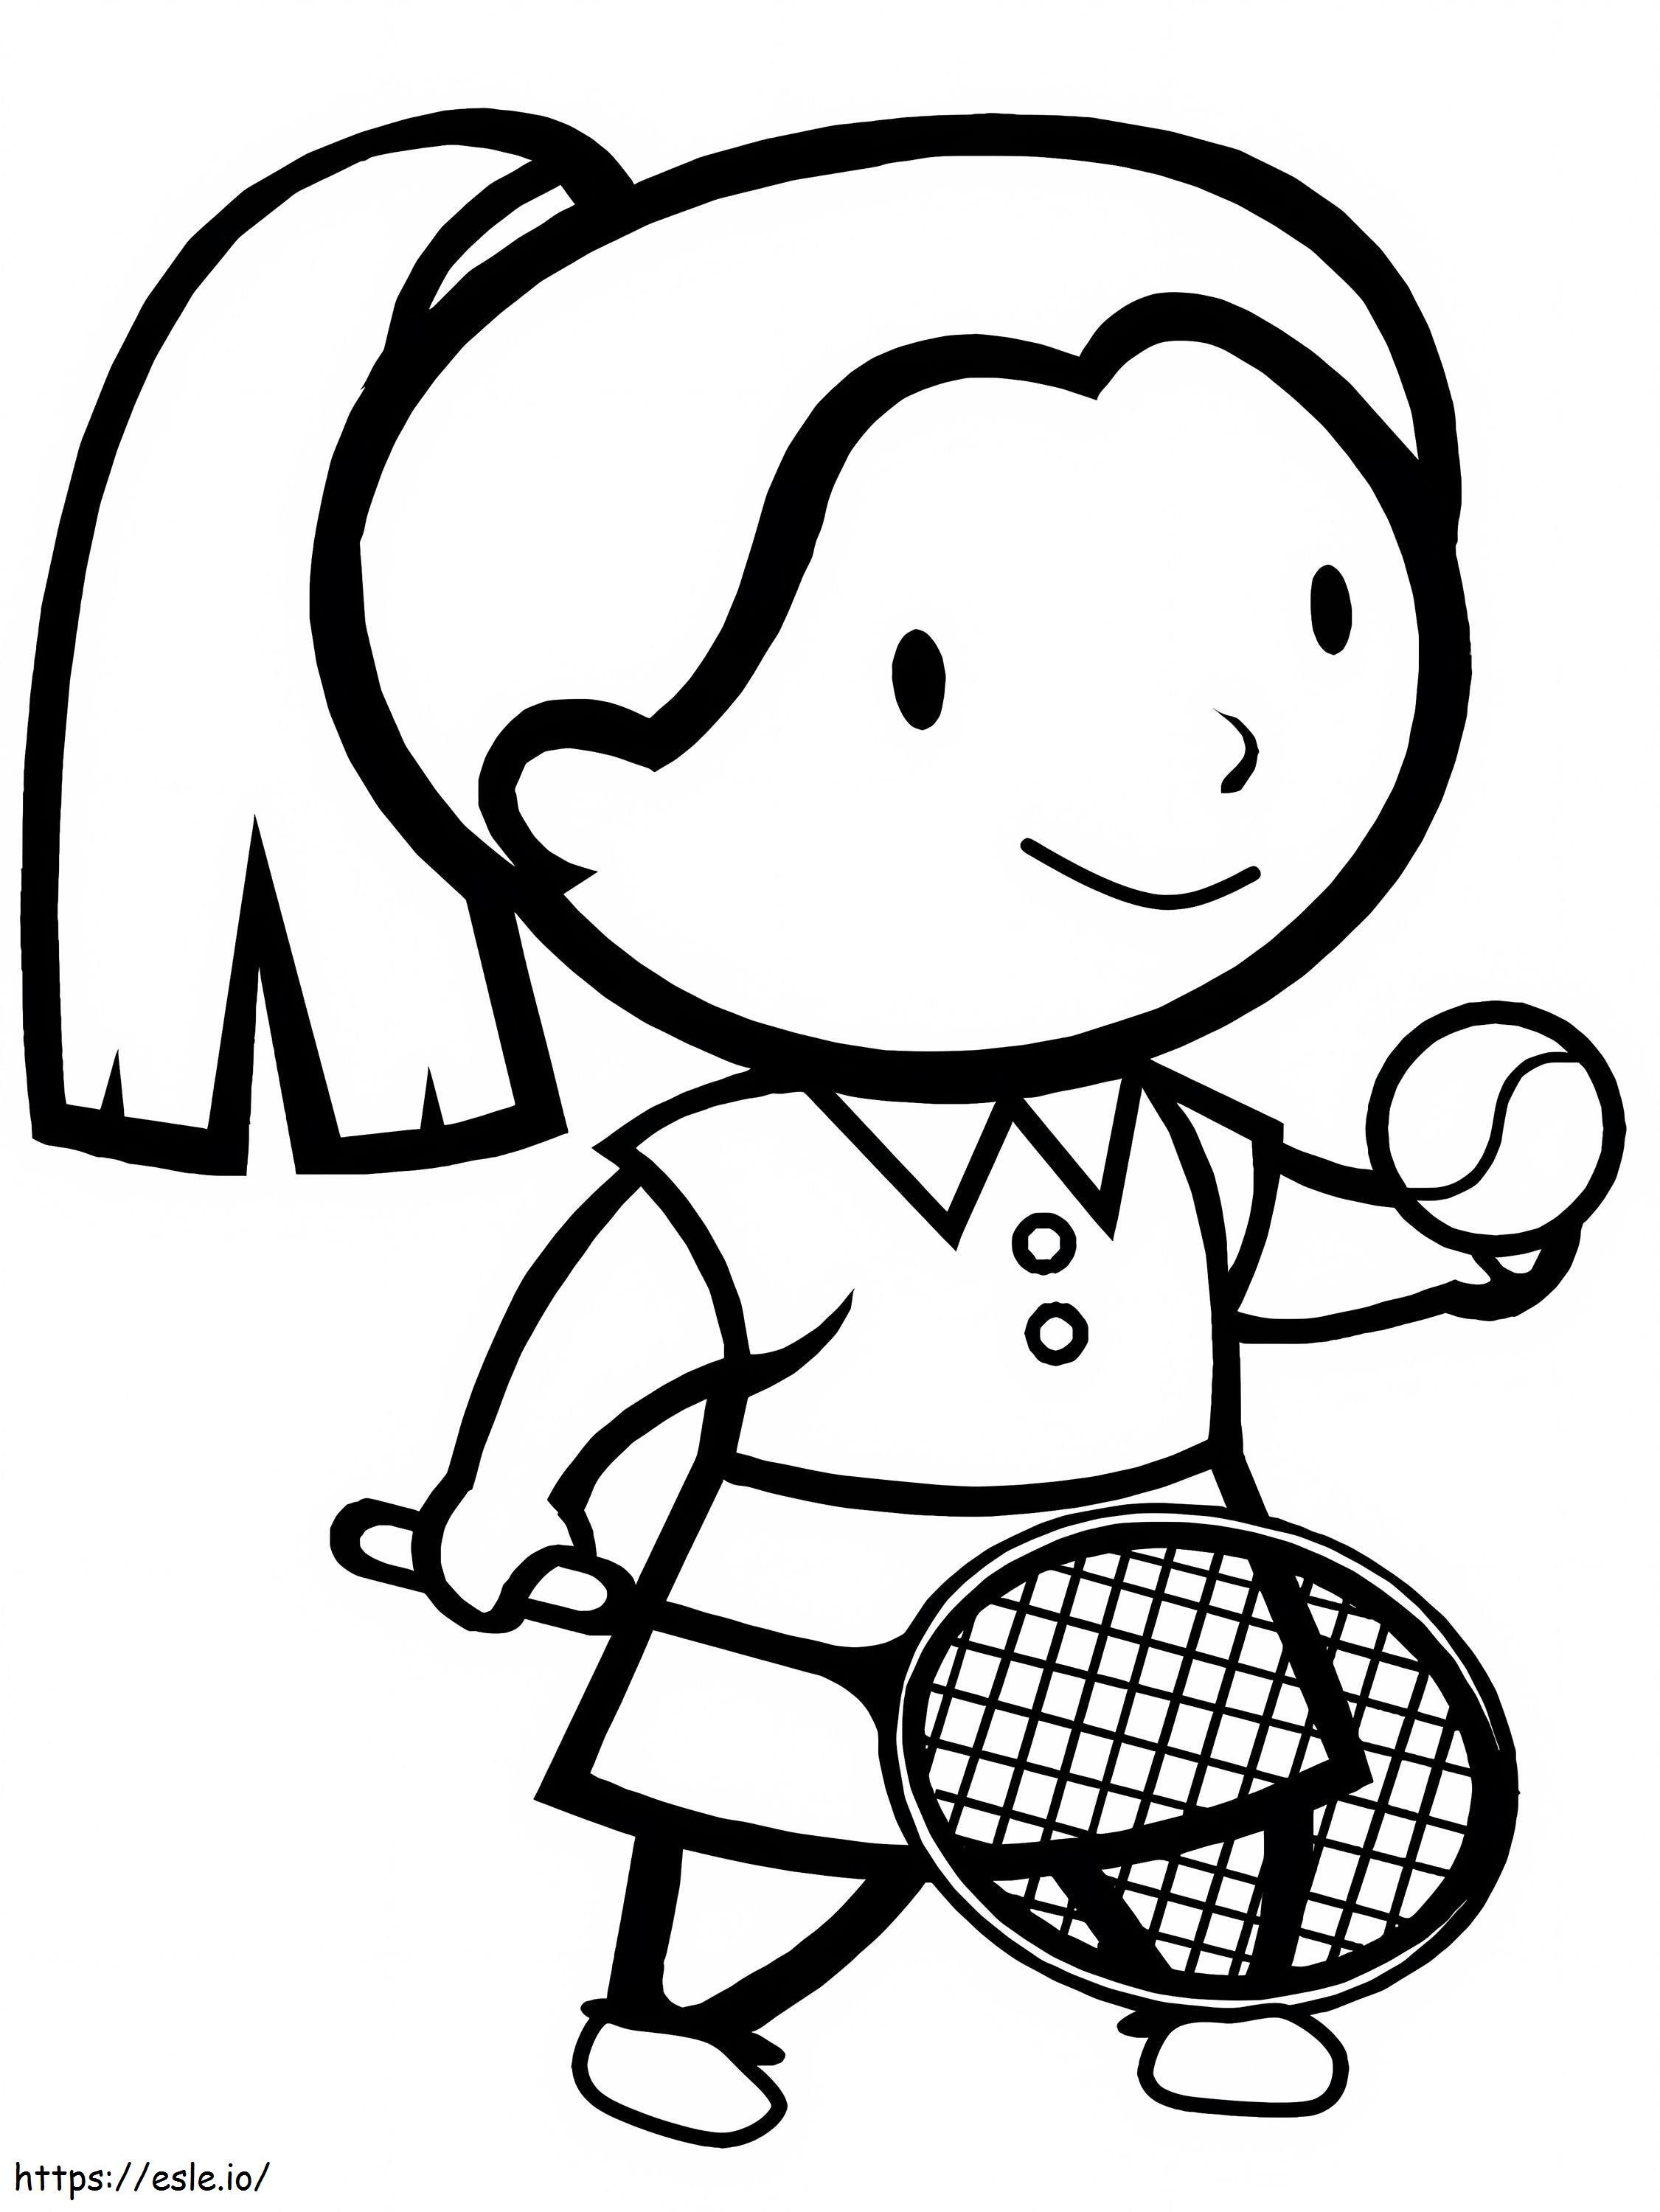 1556940512 Tennisloring Seiten Kinder spielen Sport Mädchen des Sports zum Ausdrucken 850X1133 1 ausmalbilder